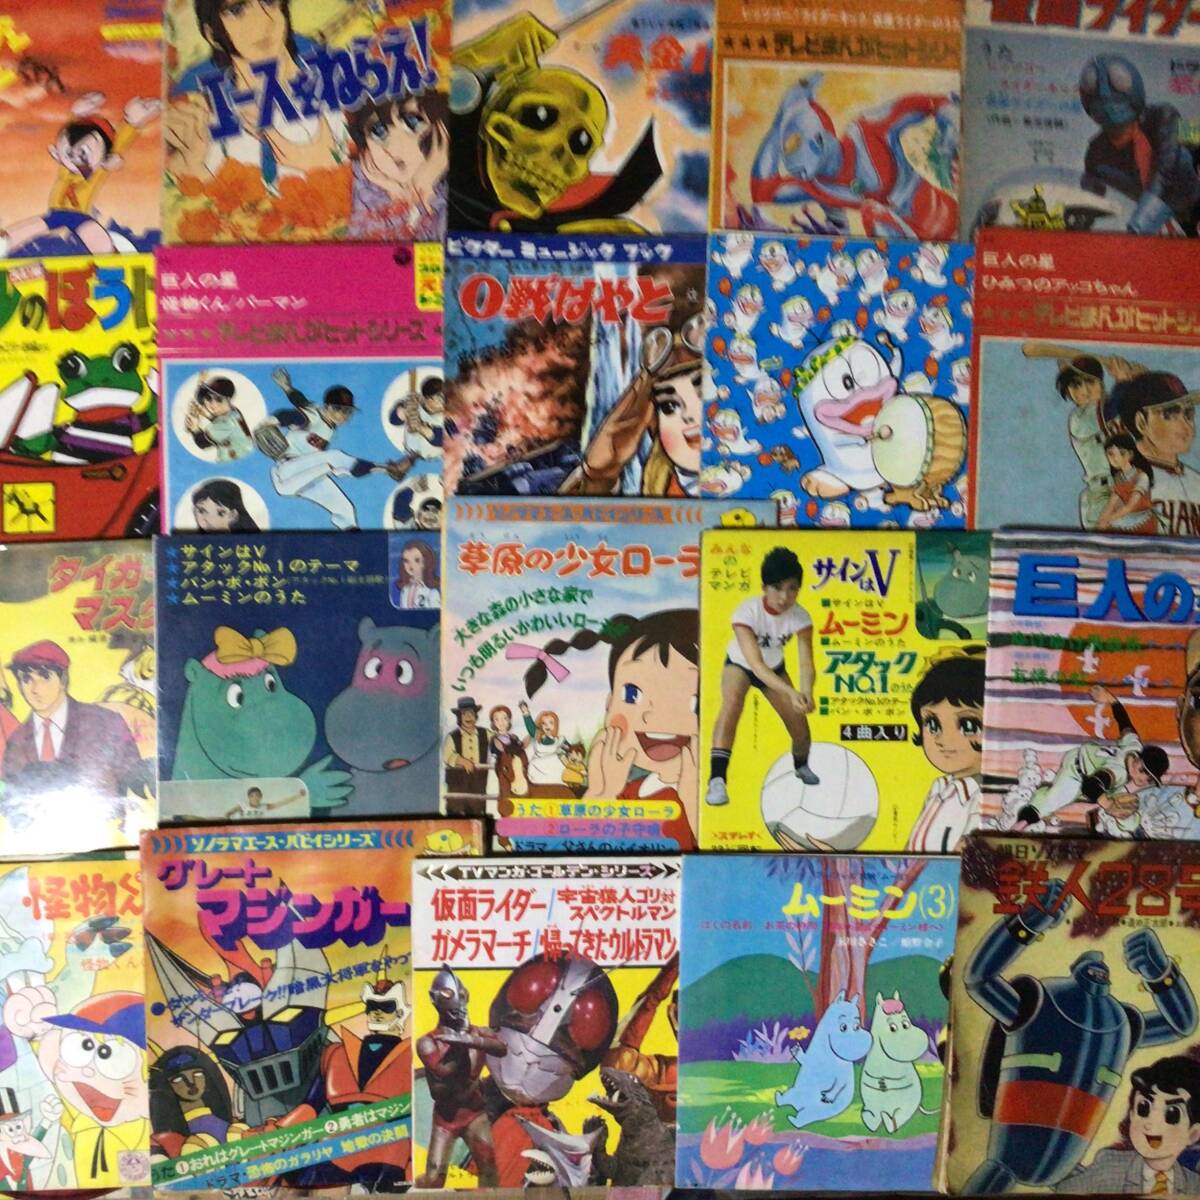  manga (манга) * аниме EP70 листов совместно выставляем kai6204